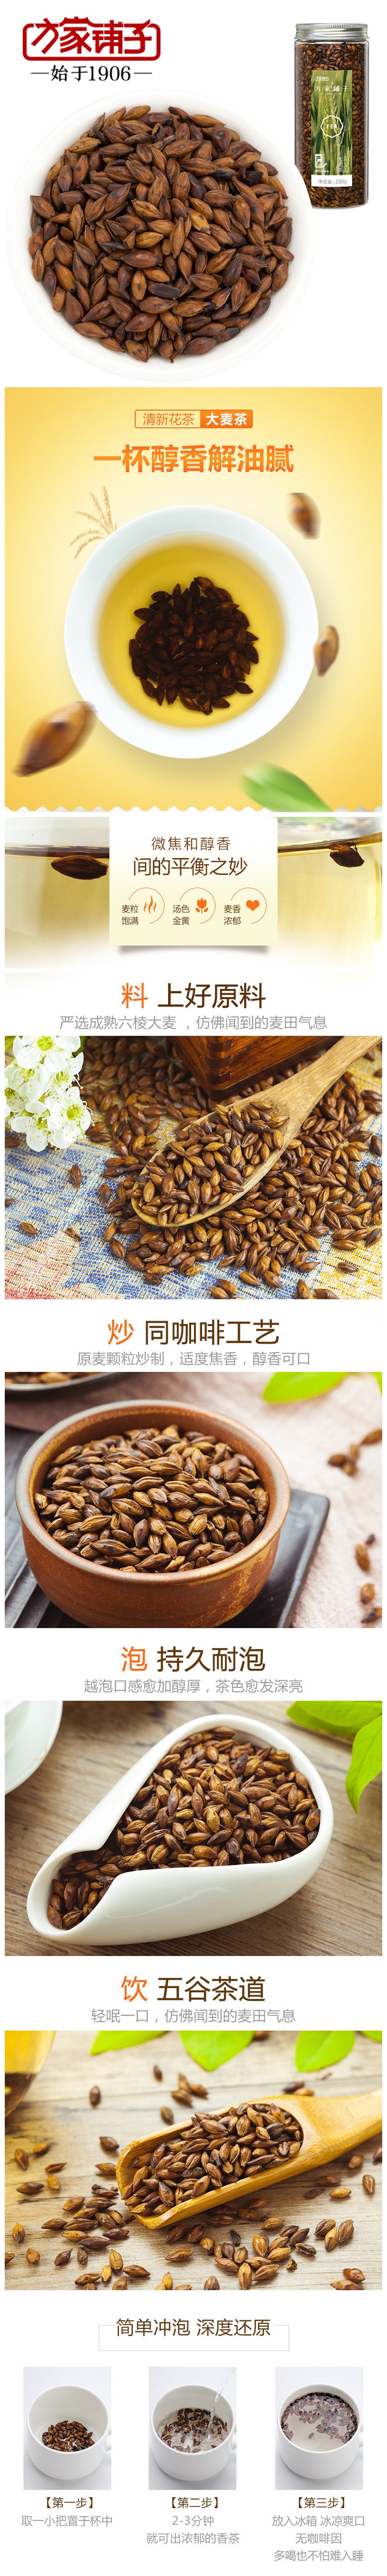 【中国直邮】方家铺子 醇香可口 去油减肥 大麦茶 230g